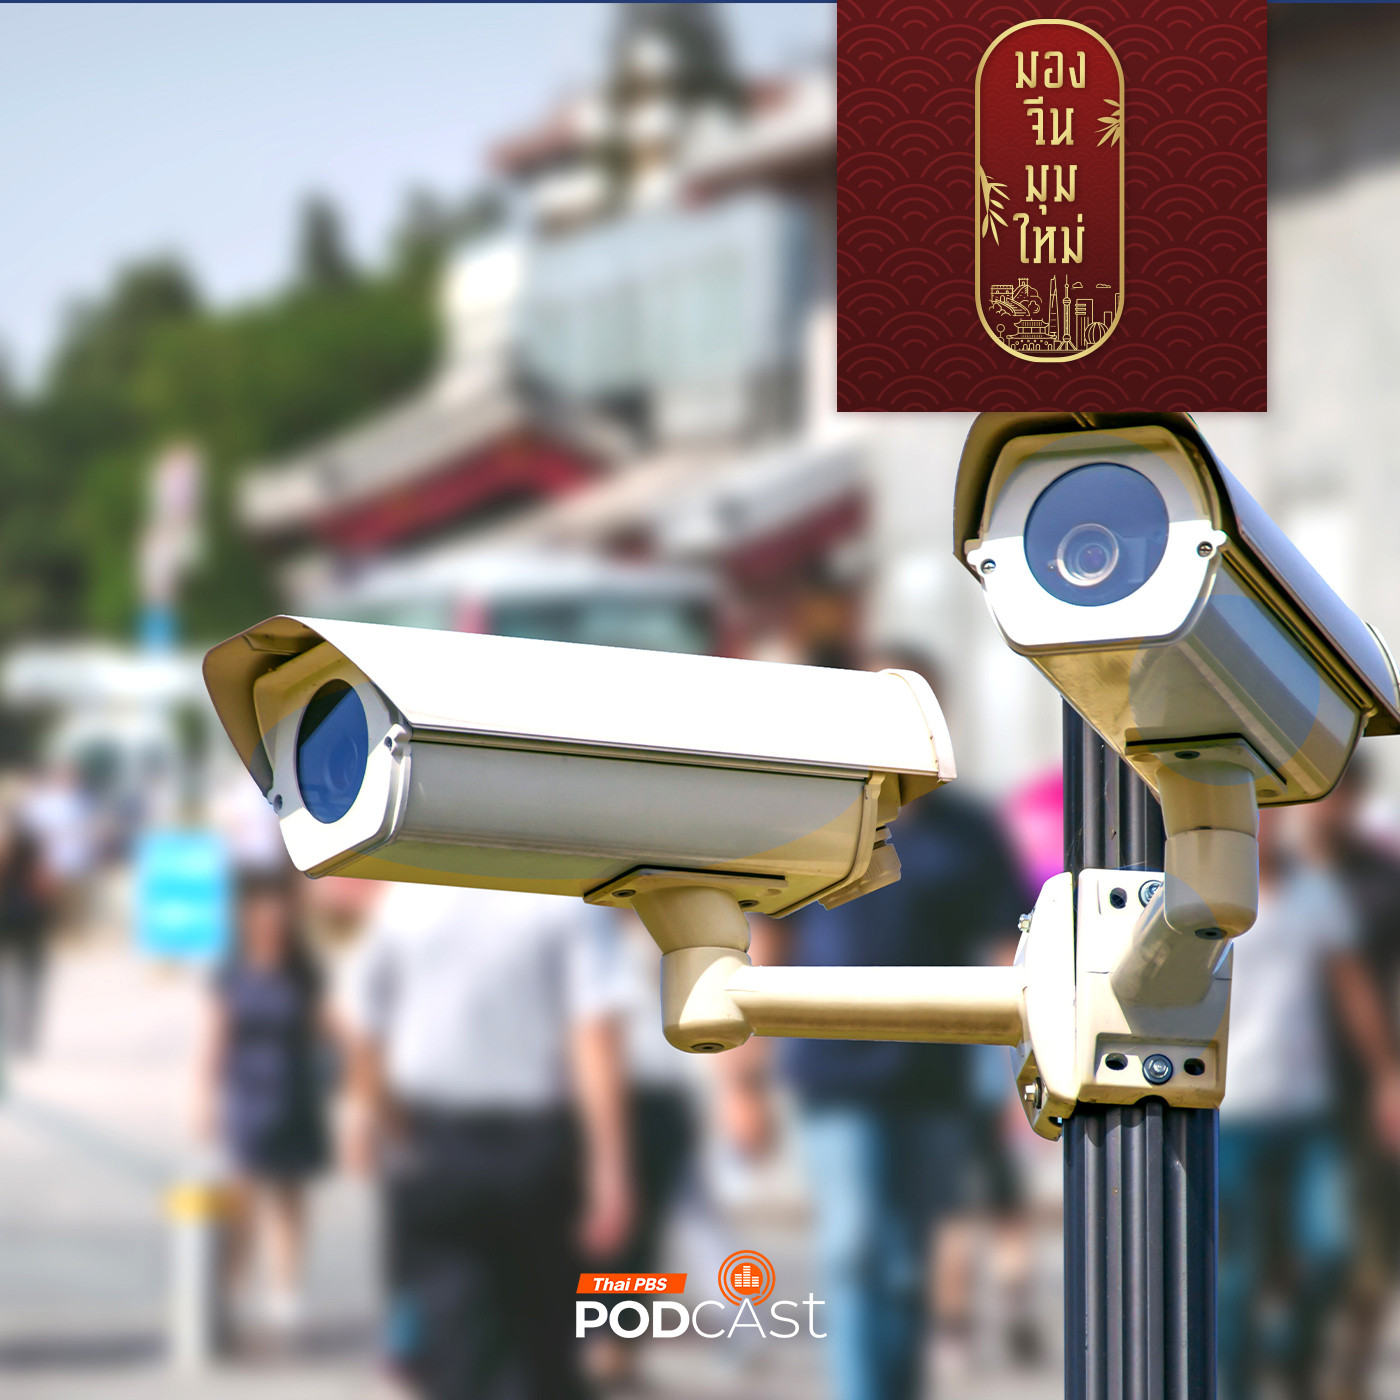 มองจีนมุมใหม่ EP. 166: กล้องวงจรปิดกับสิทธิส่วนบุคคลของพลเมืองจีน